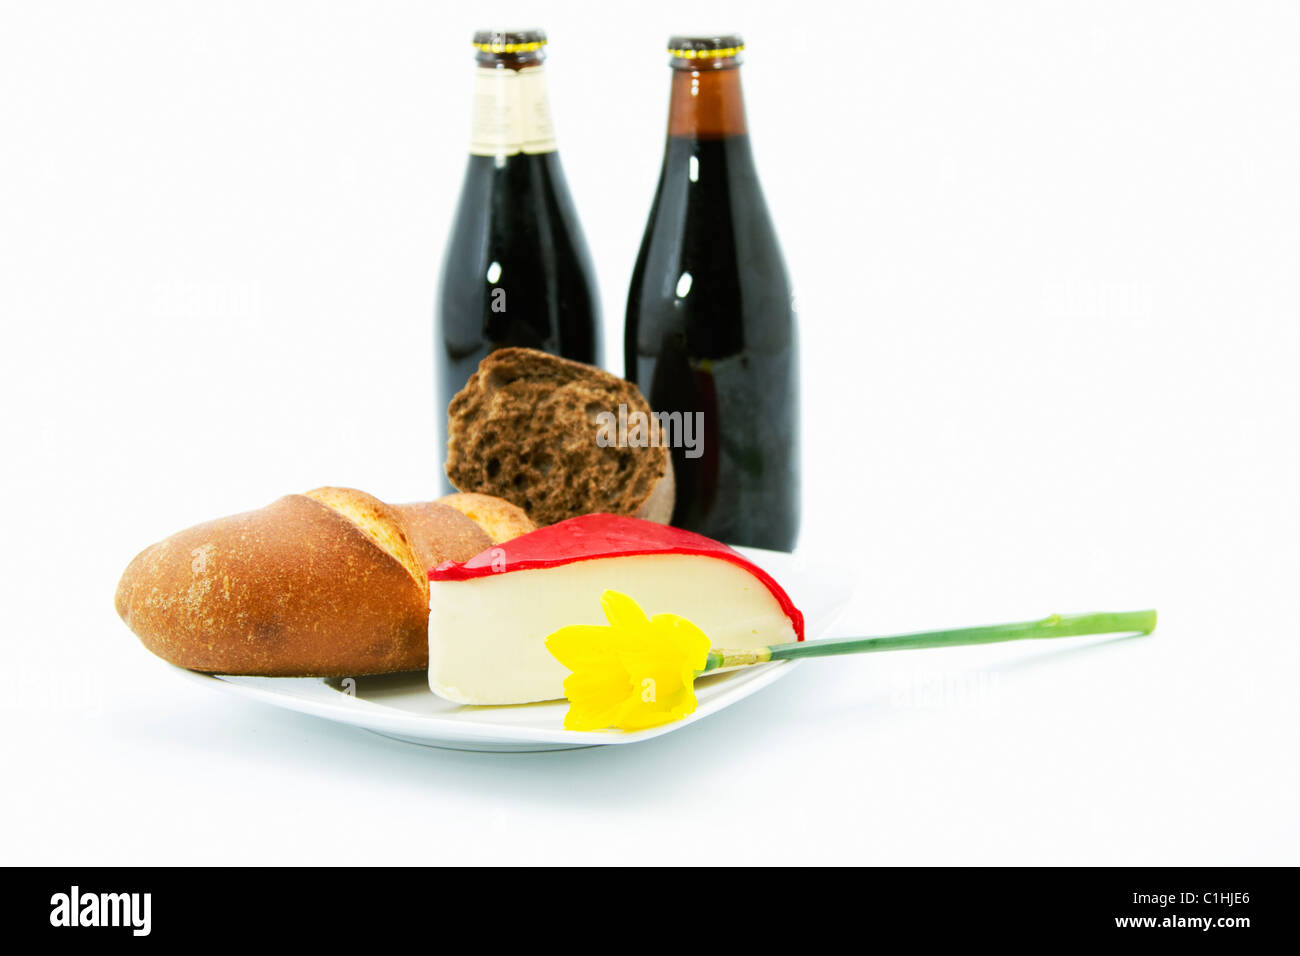 Deux bouteilles de bière brune sont placés avec des pains à grains entiers, du fromage à croûte rouge sur une plaque blanche dans un vrai pays, le déjeuner. Banque D'Images